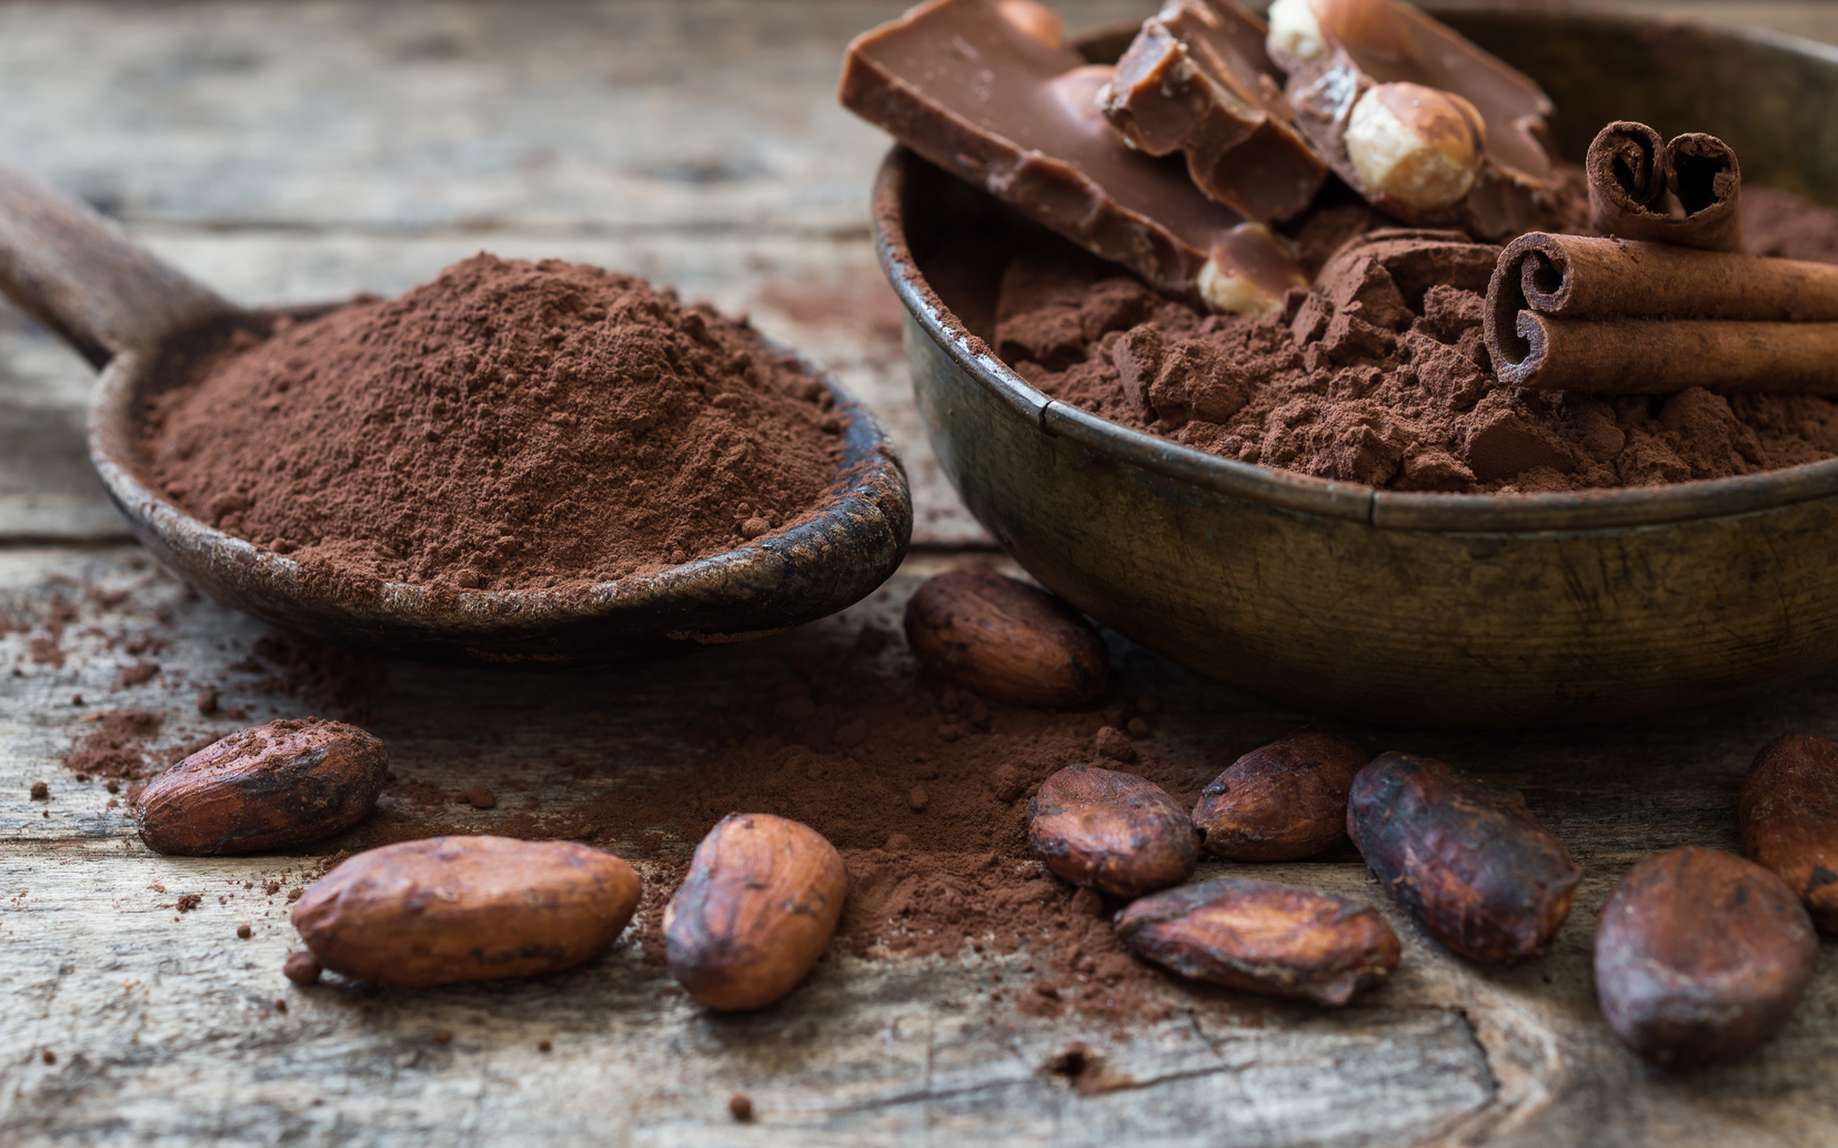 El precio del cacao supera los 10.000 dólares, el mayor nivel desde que se tienen registros